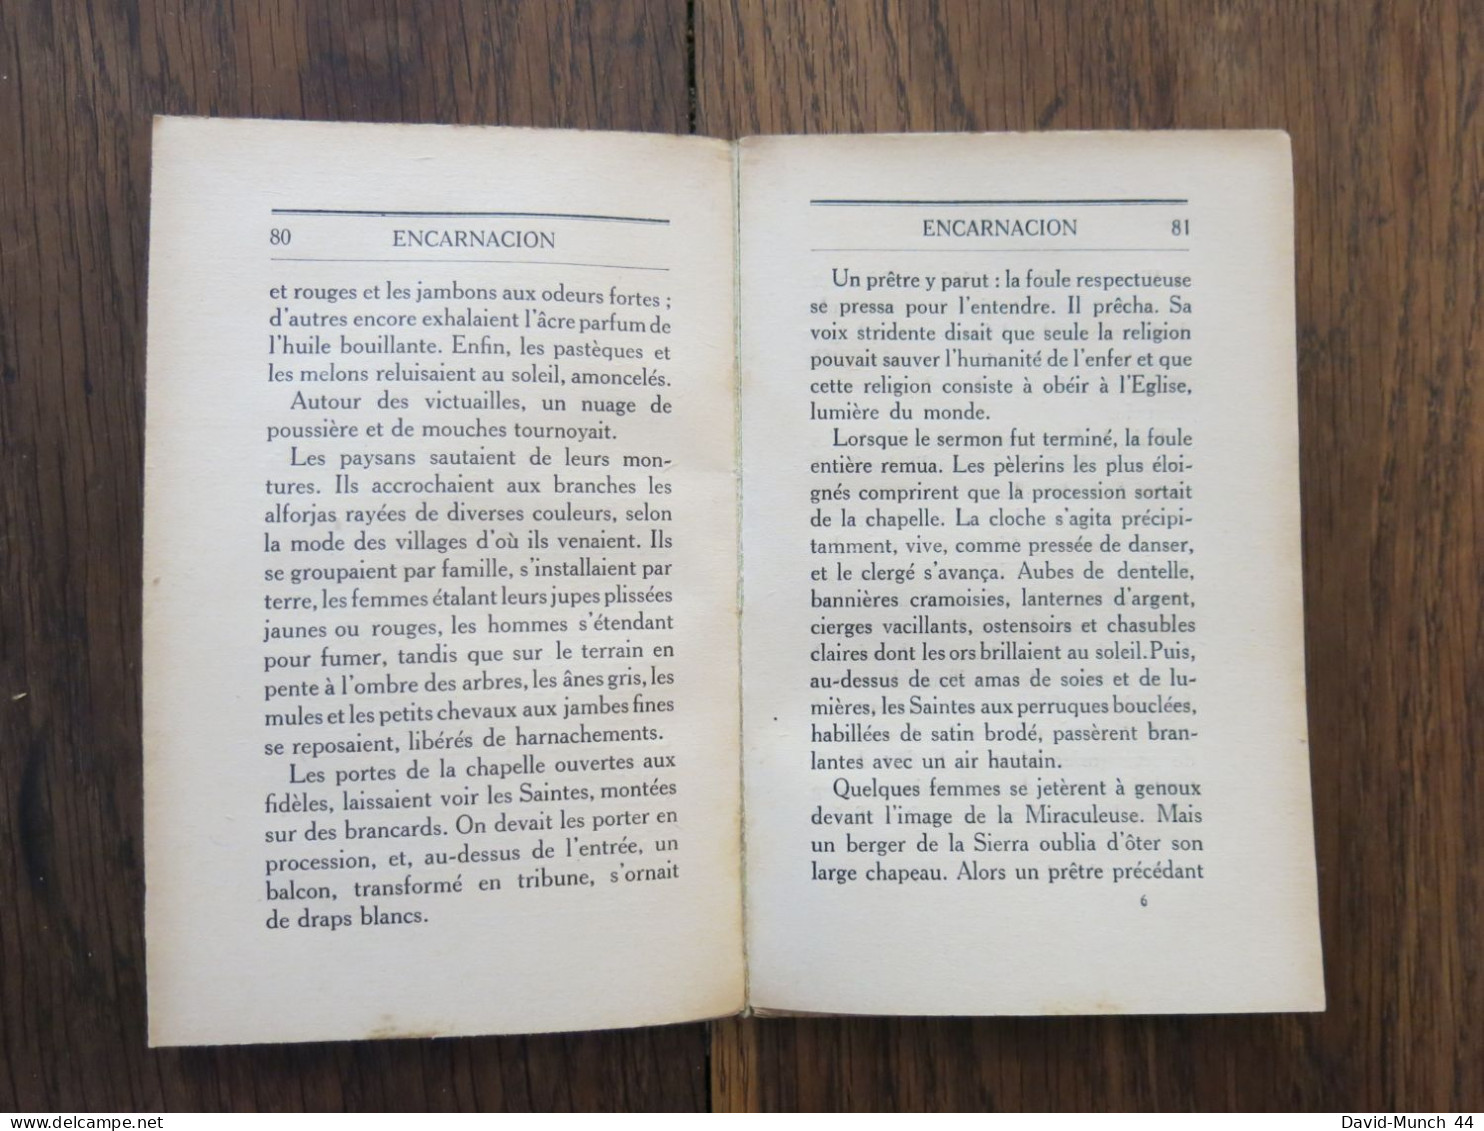 Encarnacion de Aurore Sand. Librairie Grasset, Les cahiers verts 26. 1923, Exemplaire sur Vergé Bouffant numéroté